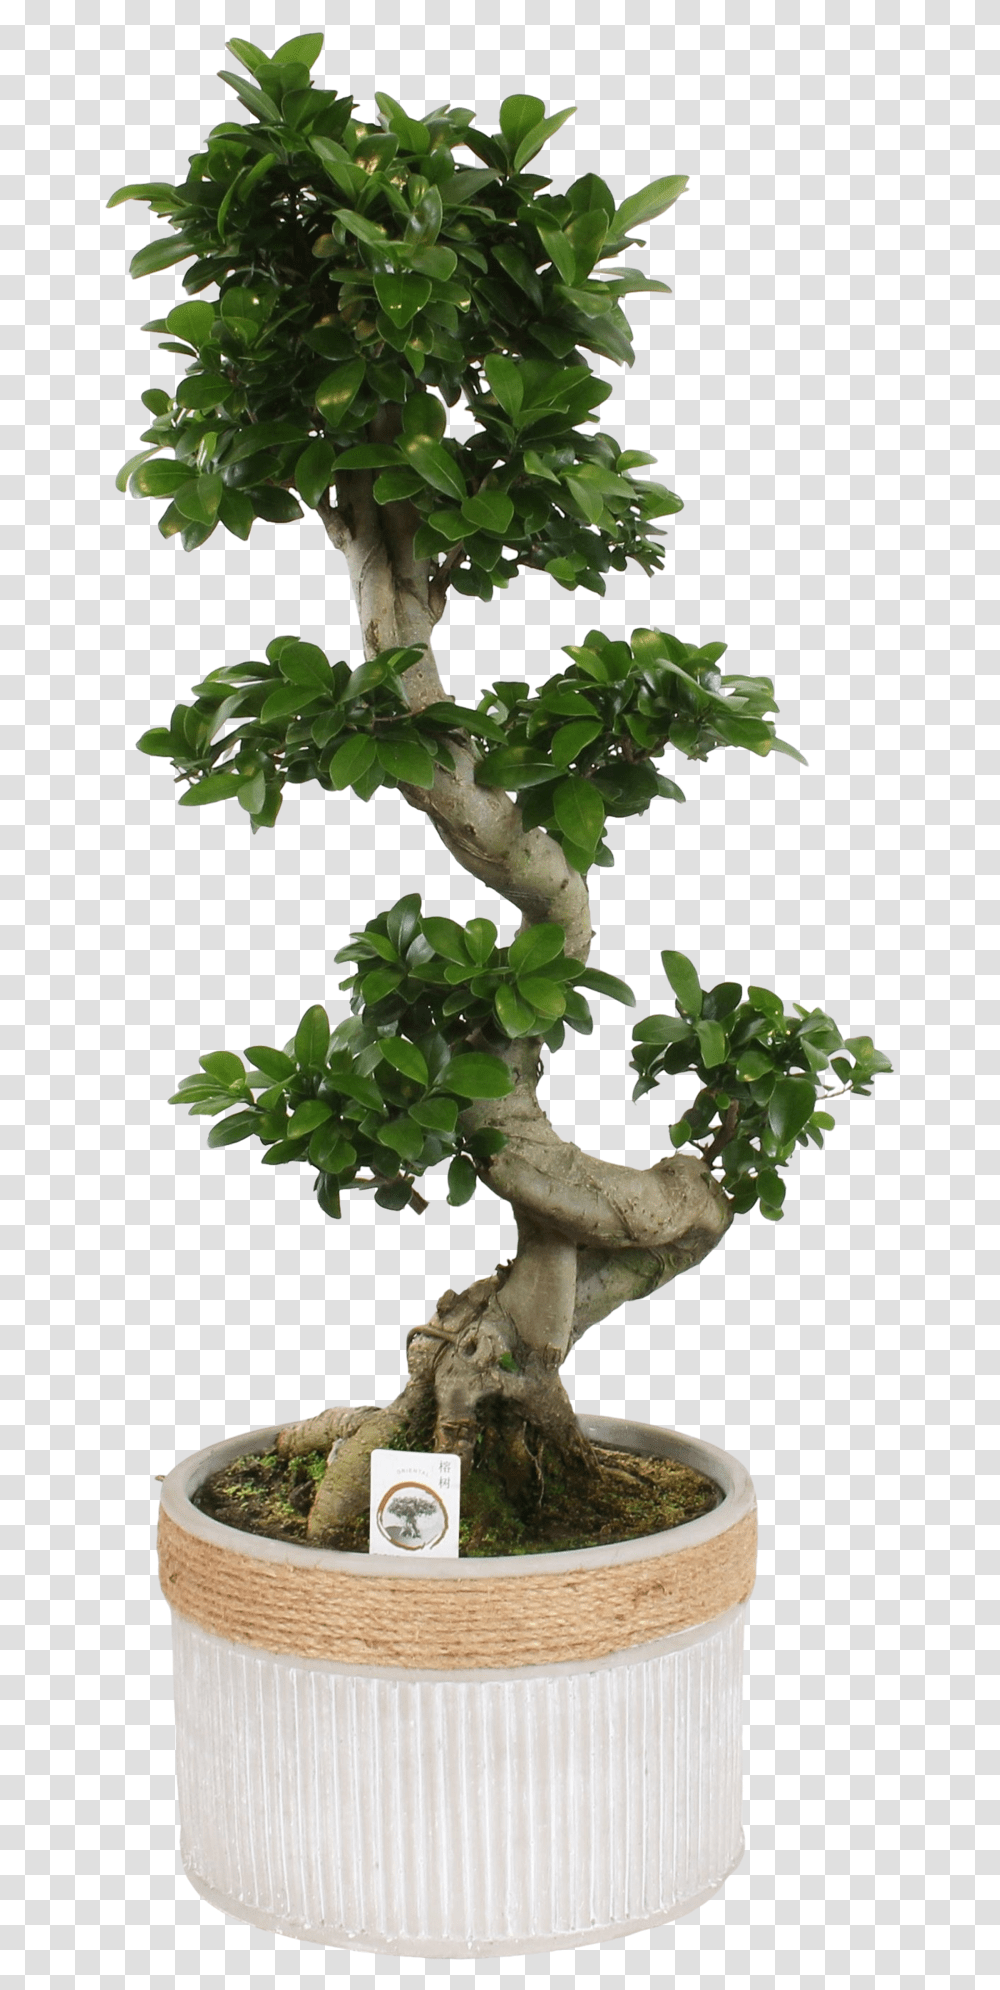 Bonsai Ginseng S S Shape Ficus Bonsai, Tree, Plant, Potted Plant, Vase Transparent Png